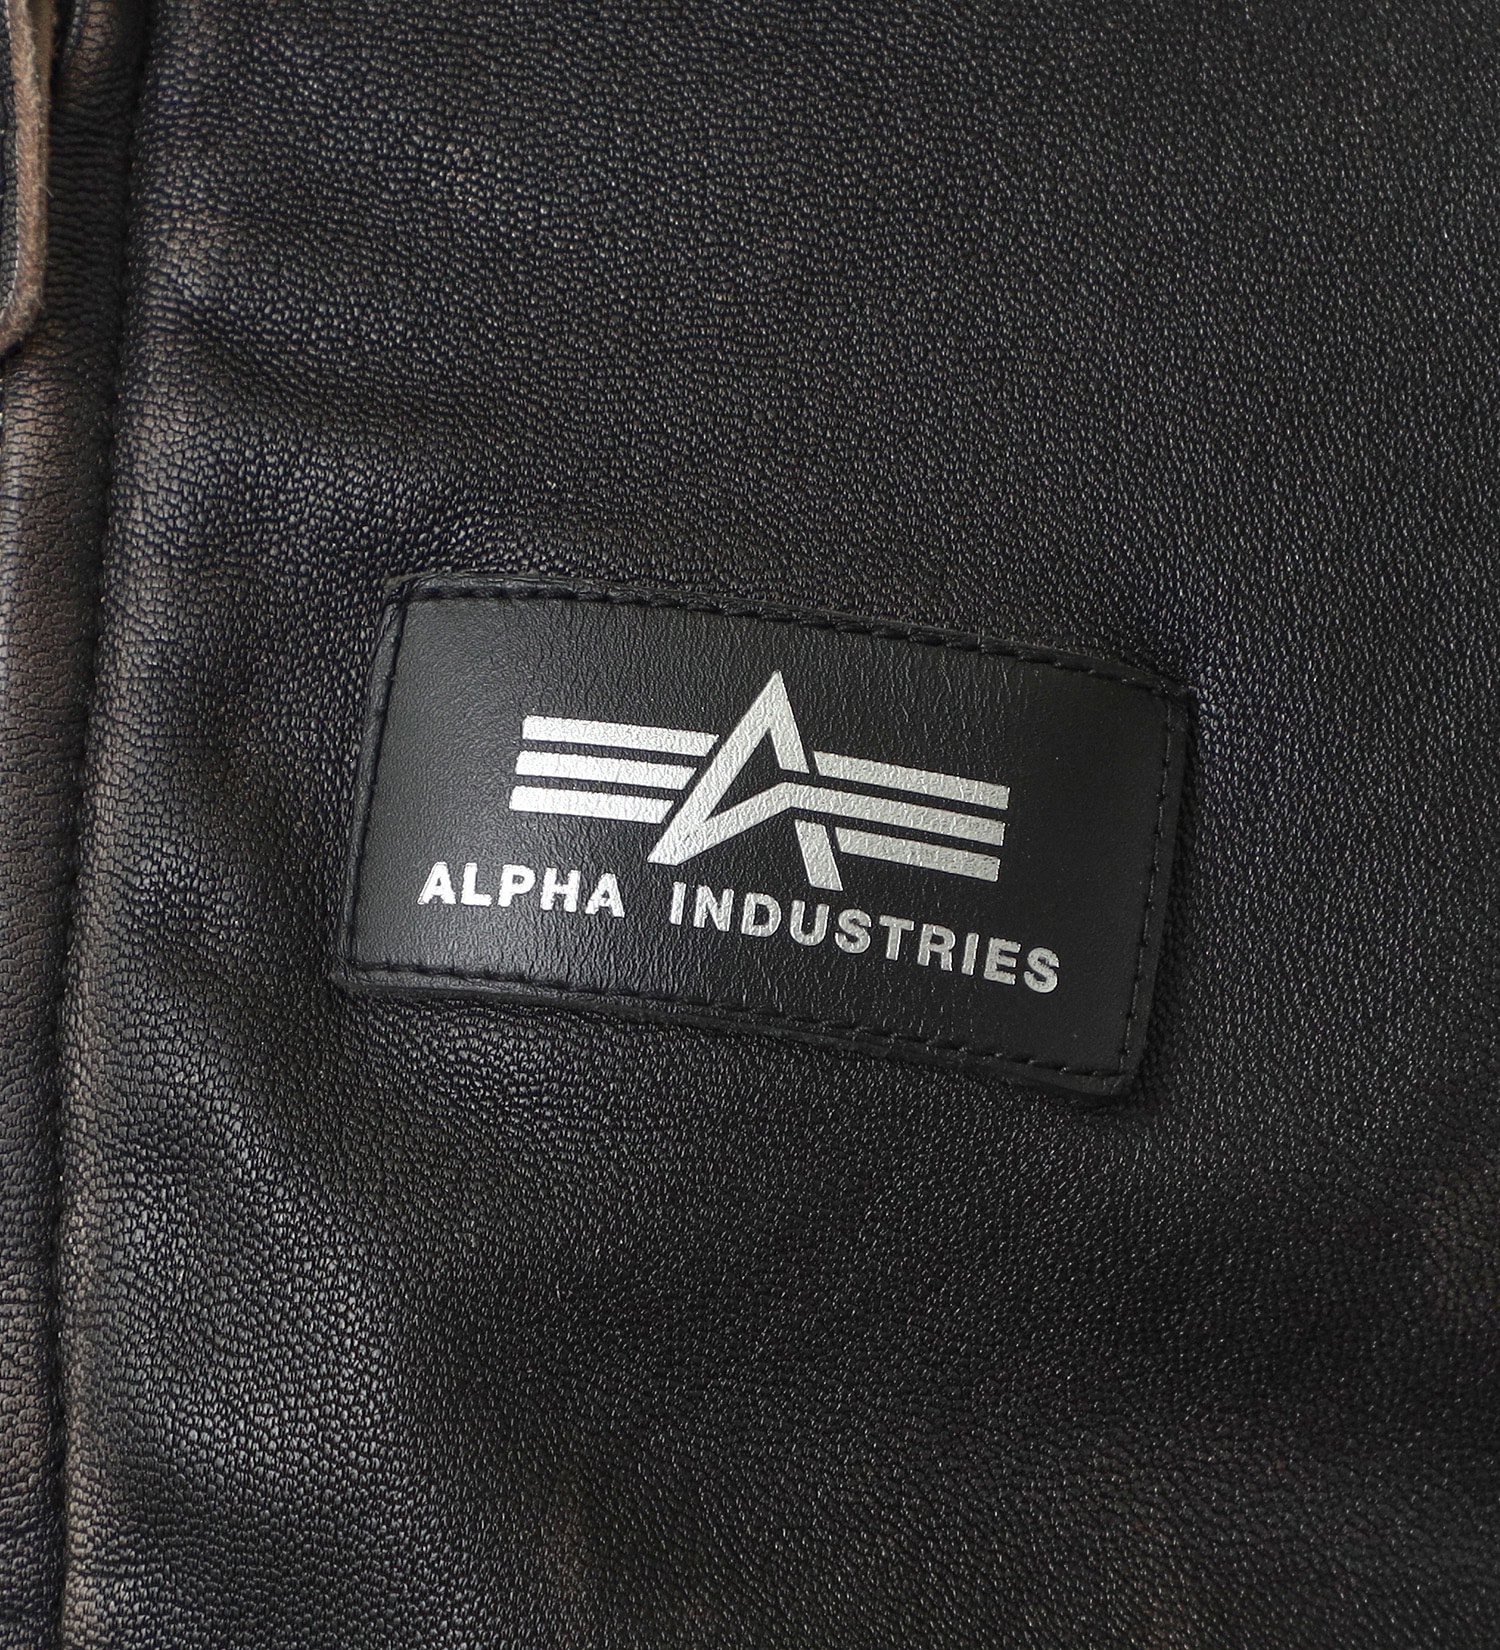 ALPHA(アルファ)のG-1ジャケット|ジャケット/アウター/ミリタリージャケット/メンズ|ブラック